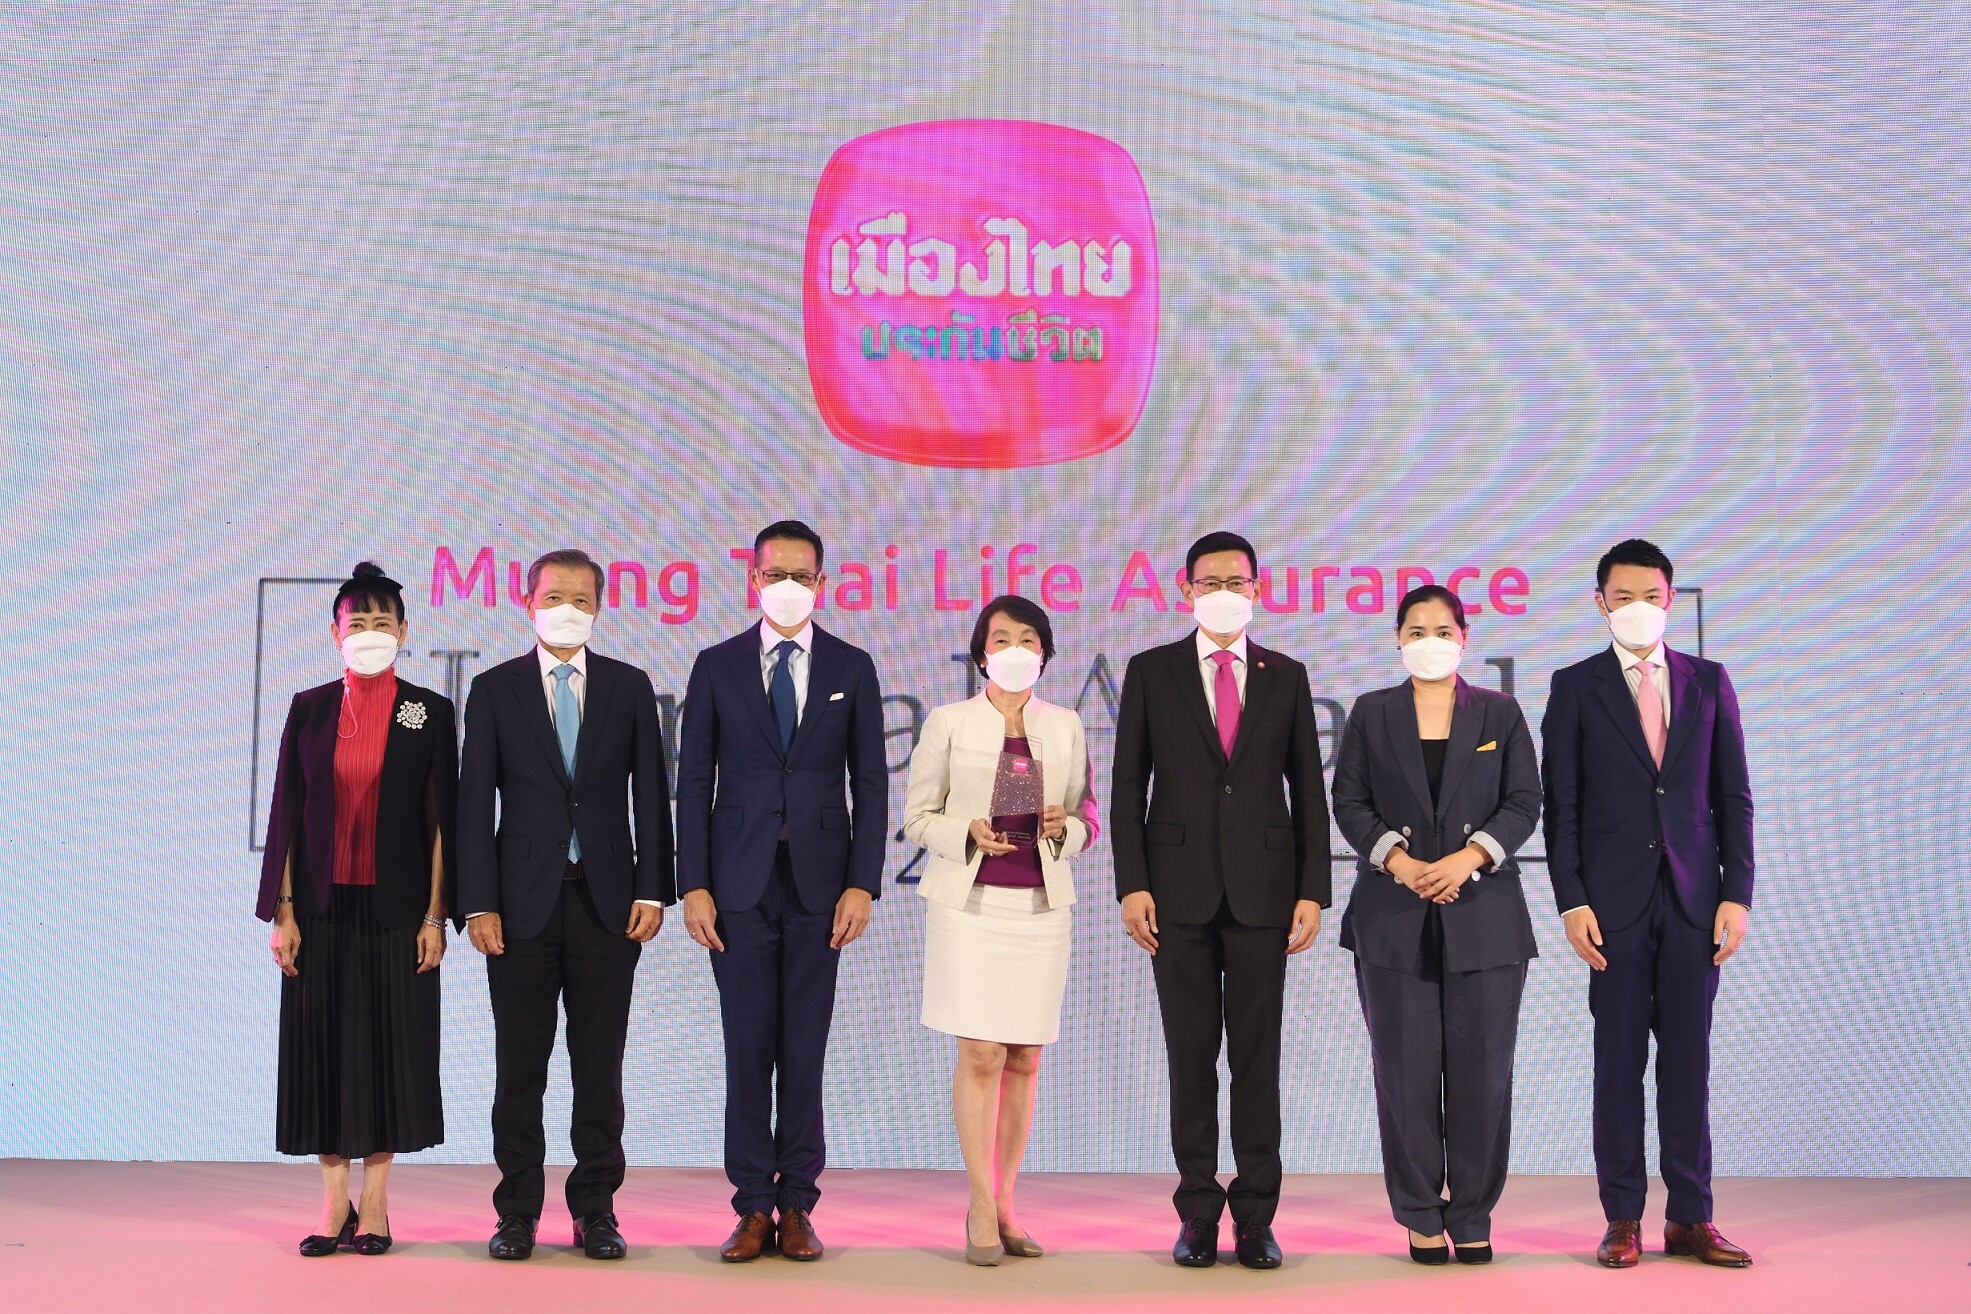 เมืองไทยประกันชีวิต จัดพิธีมอบรางวัลเกียรติยศ "Muang Thai Life Assurance Hospital Awards 2021" มุ่งยกระดับมาตรฐานบริการที่เป็นเลิศทุกมิติ สู่ความเป็นหนึ่งในใจลูกค้าคนสำคัญ